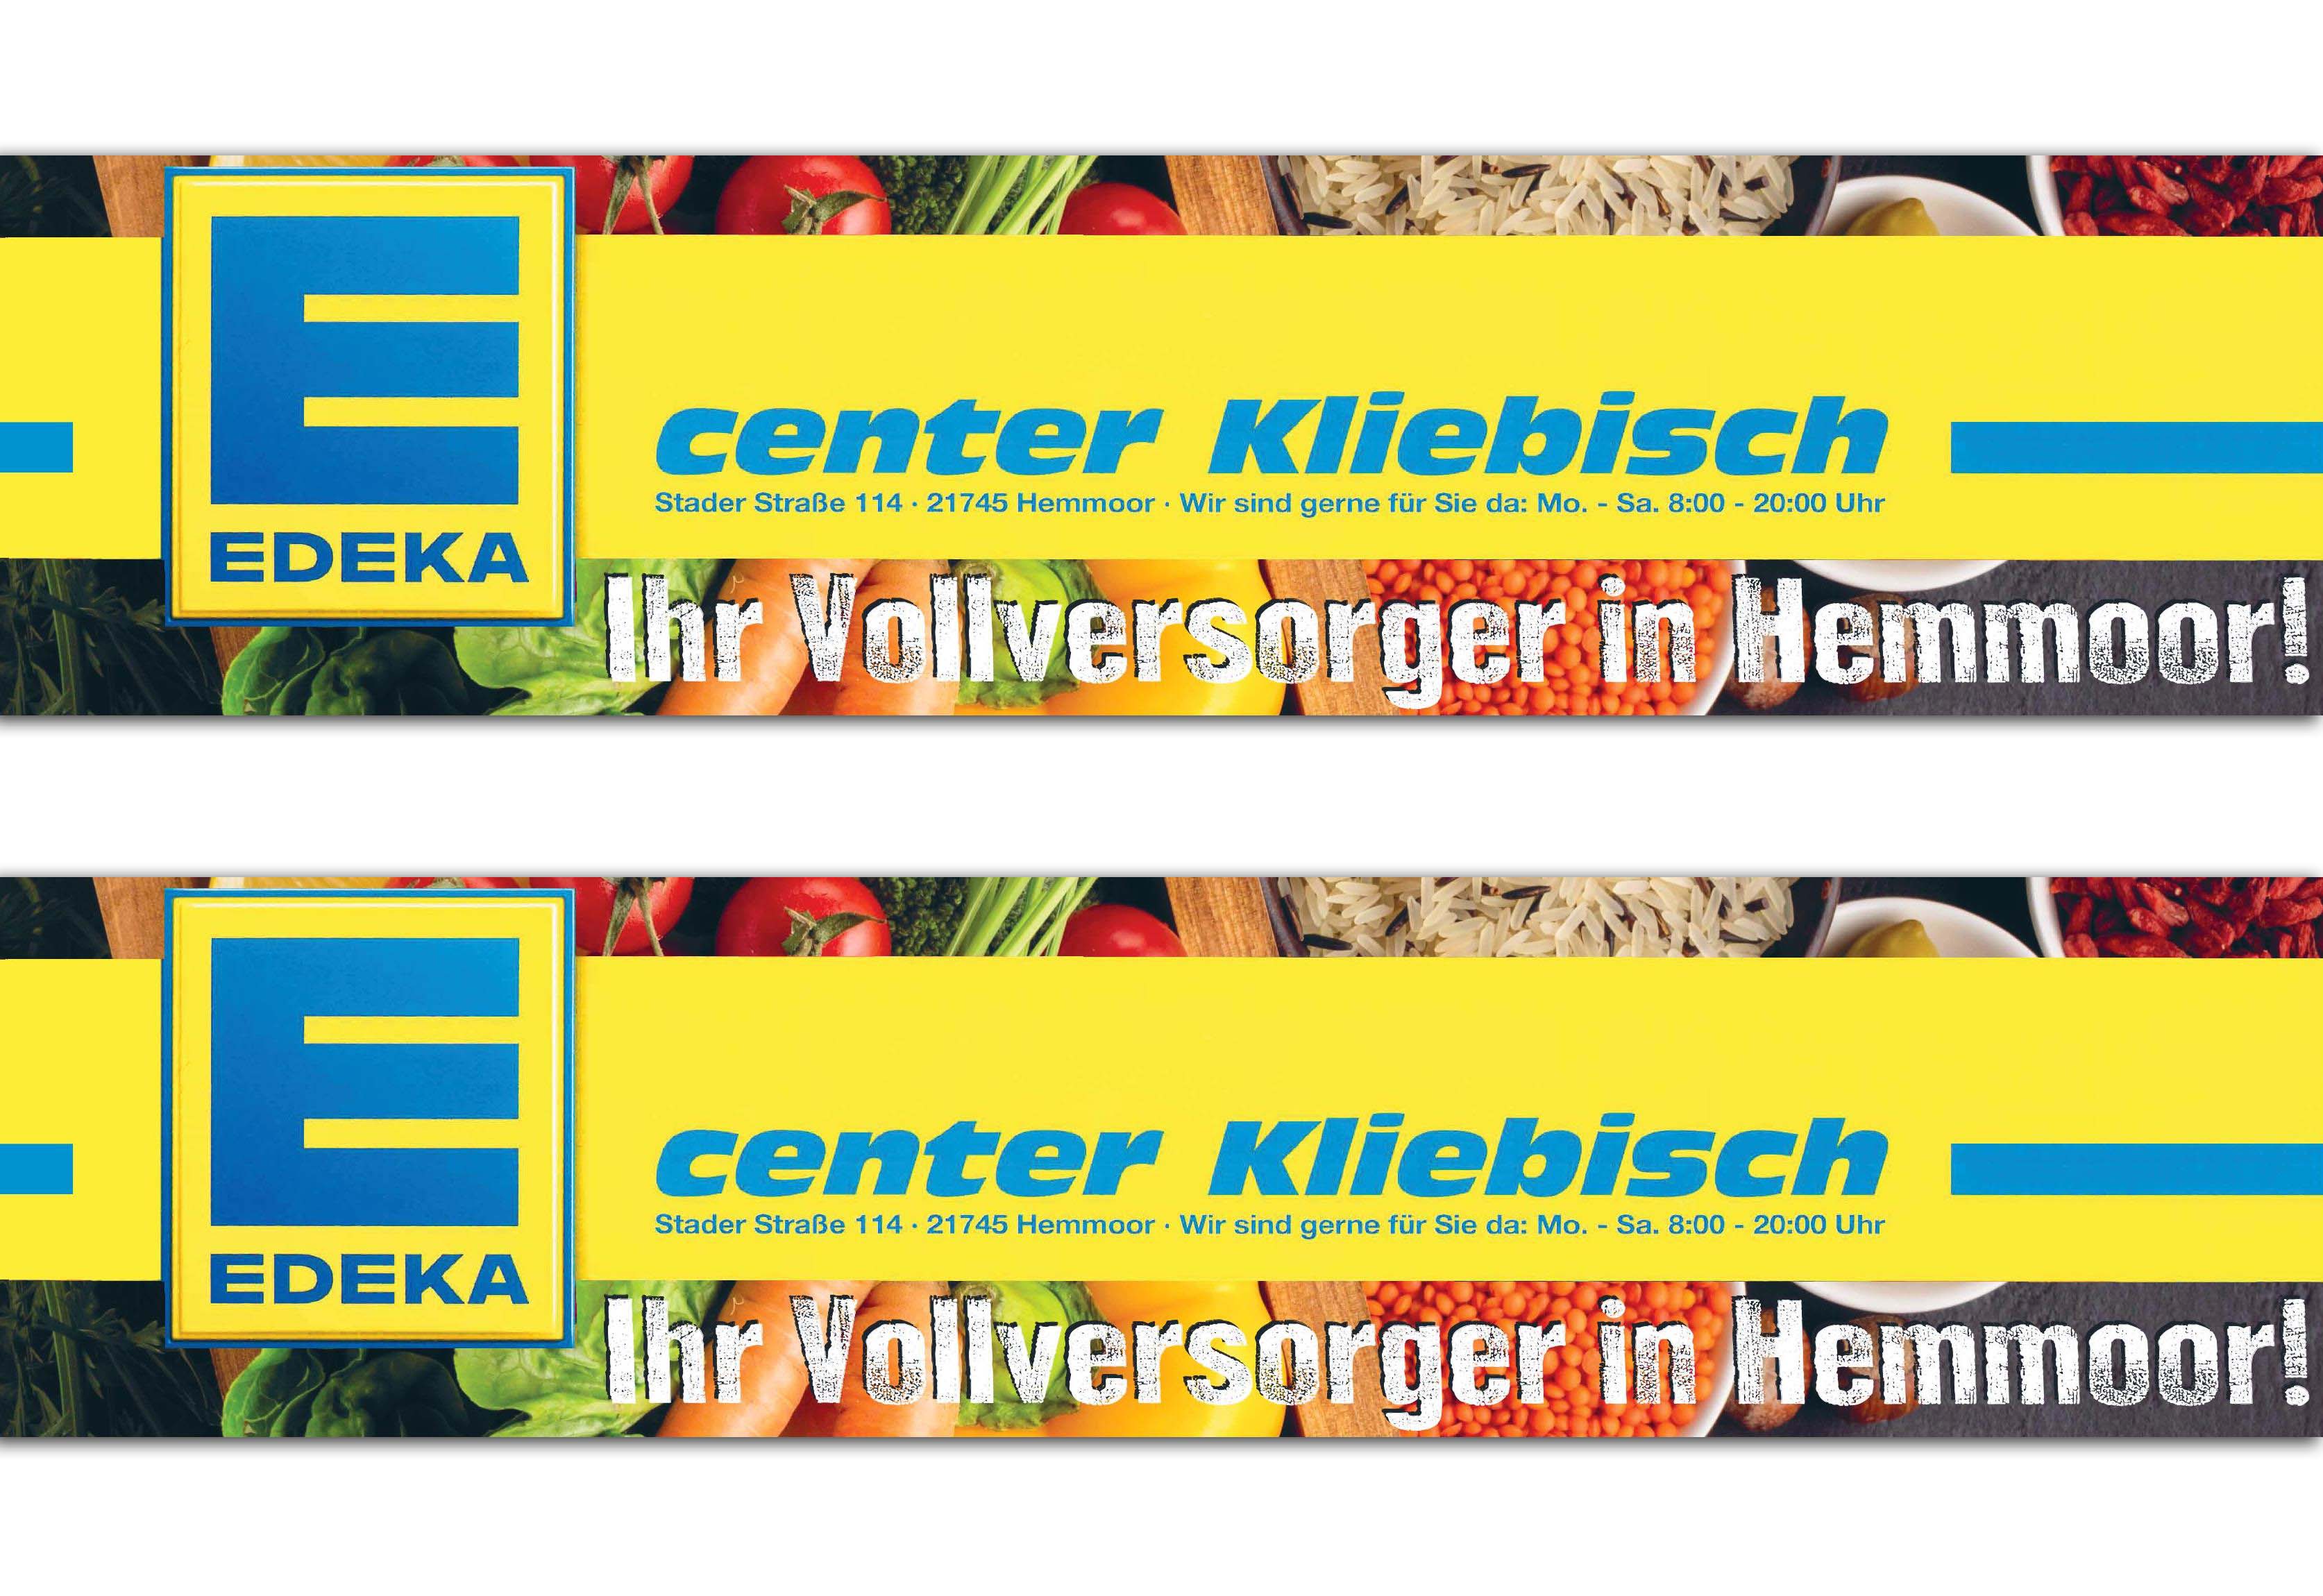 EDEKA Center Kliebisch